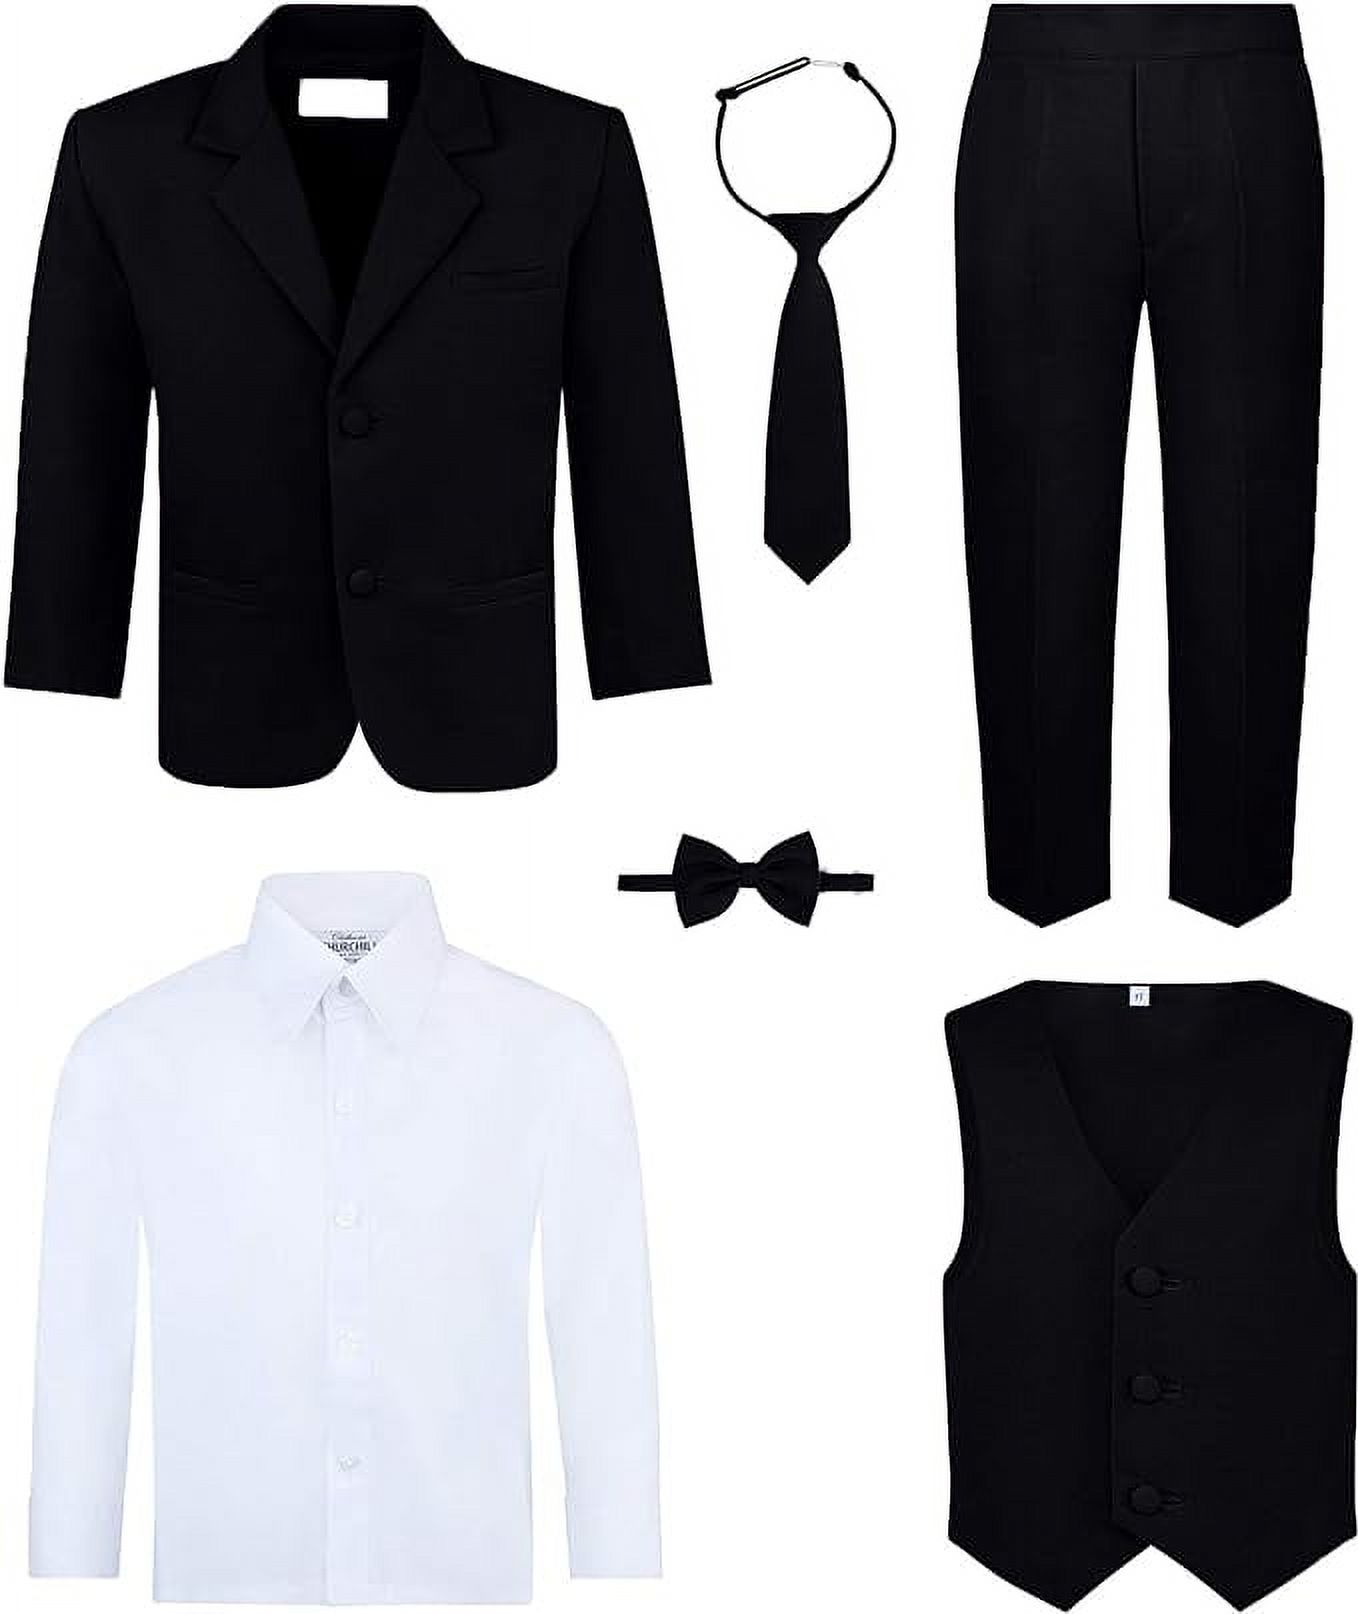 Boy's 6-Piece Suit Set - Includes Suit Jacket, Dress Pants, Matching ...